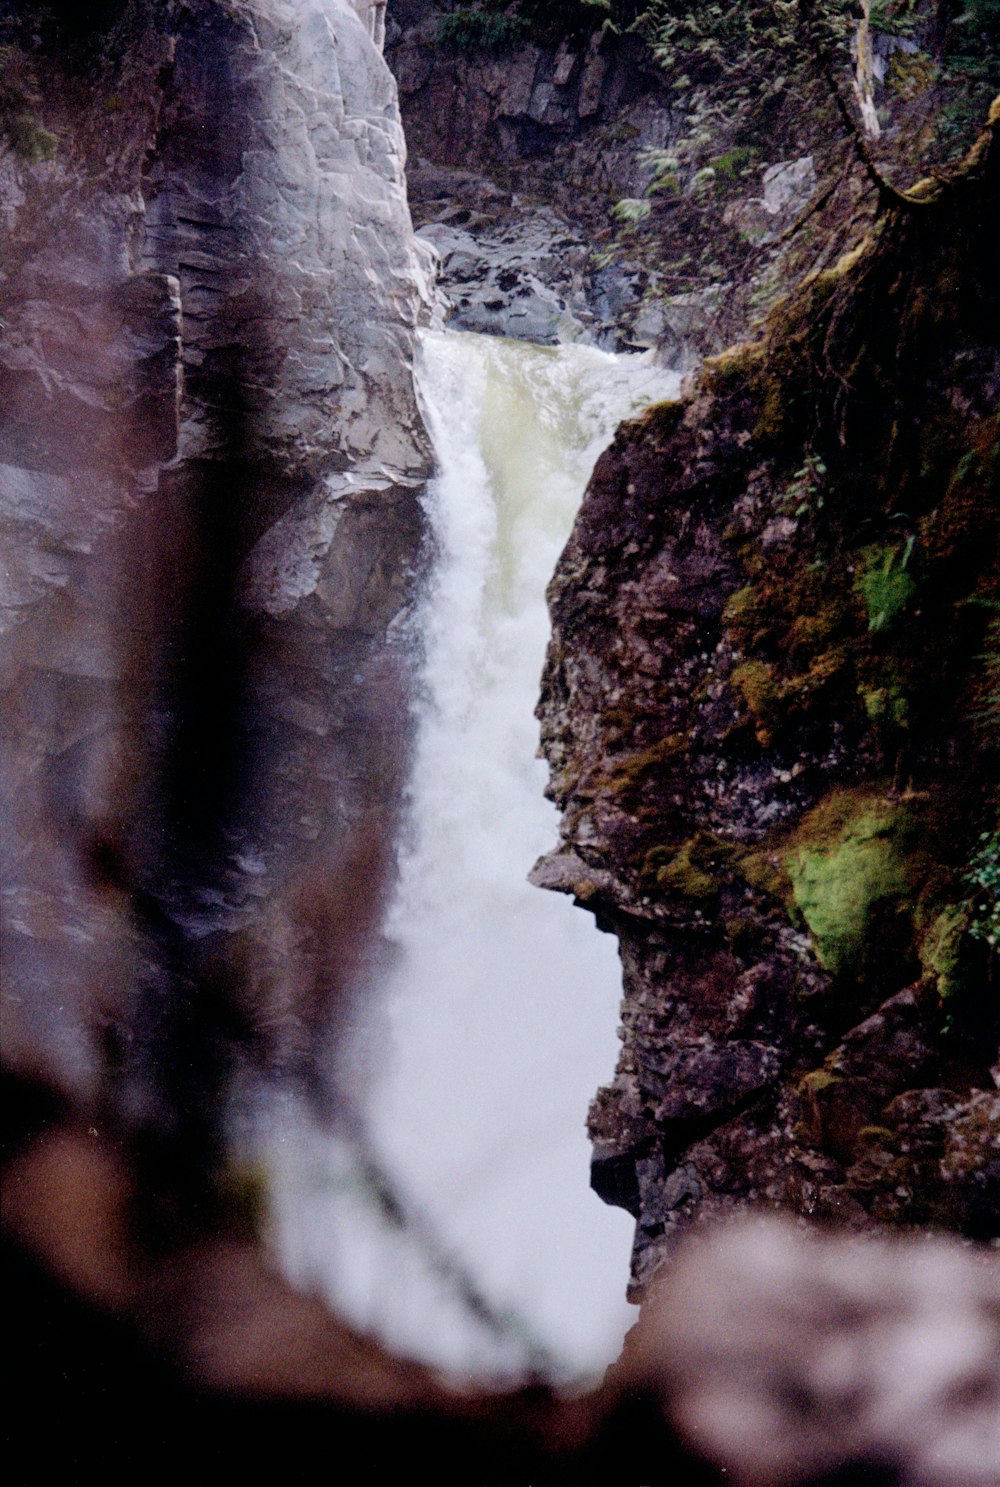 une vue d’une cascade depuis le flanc d’une falaise